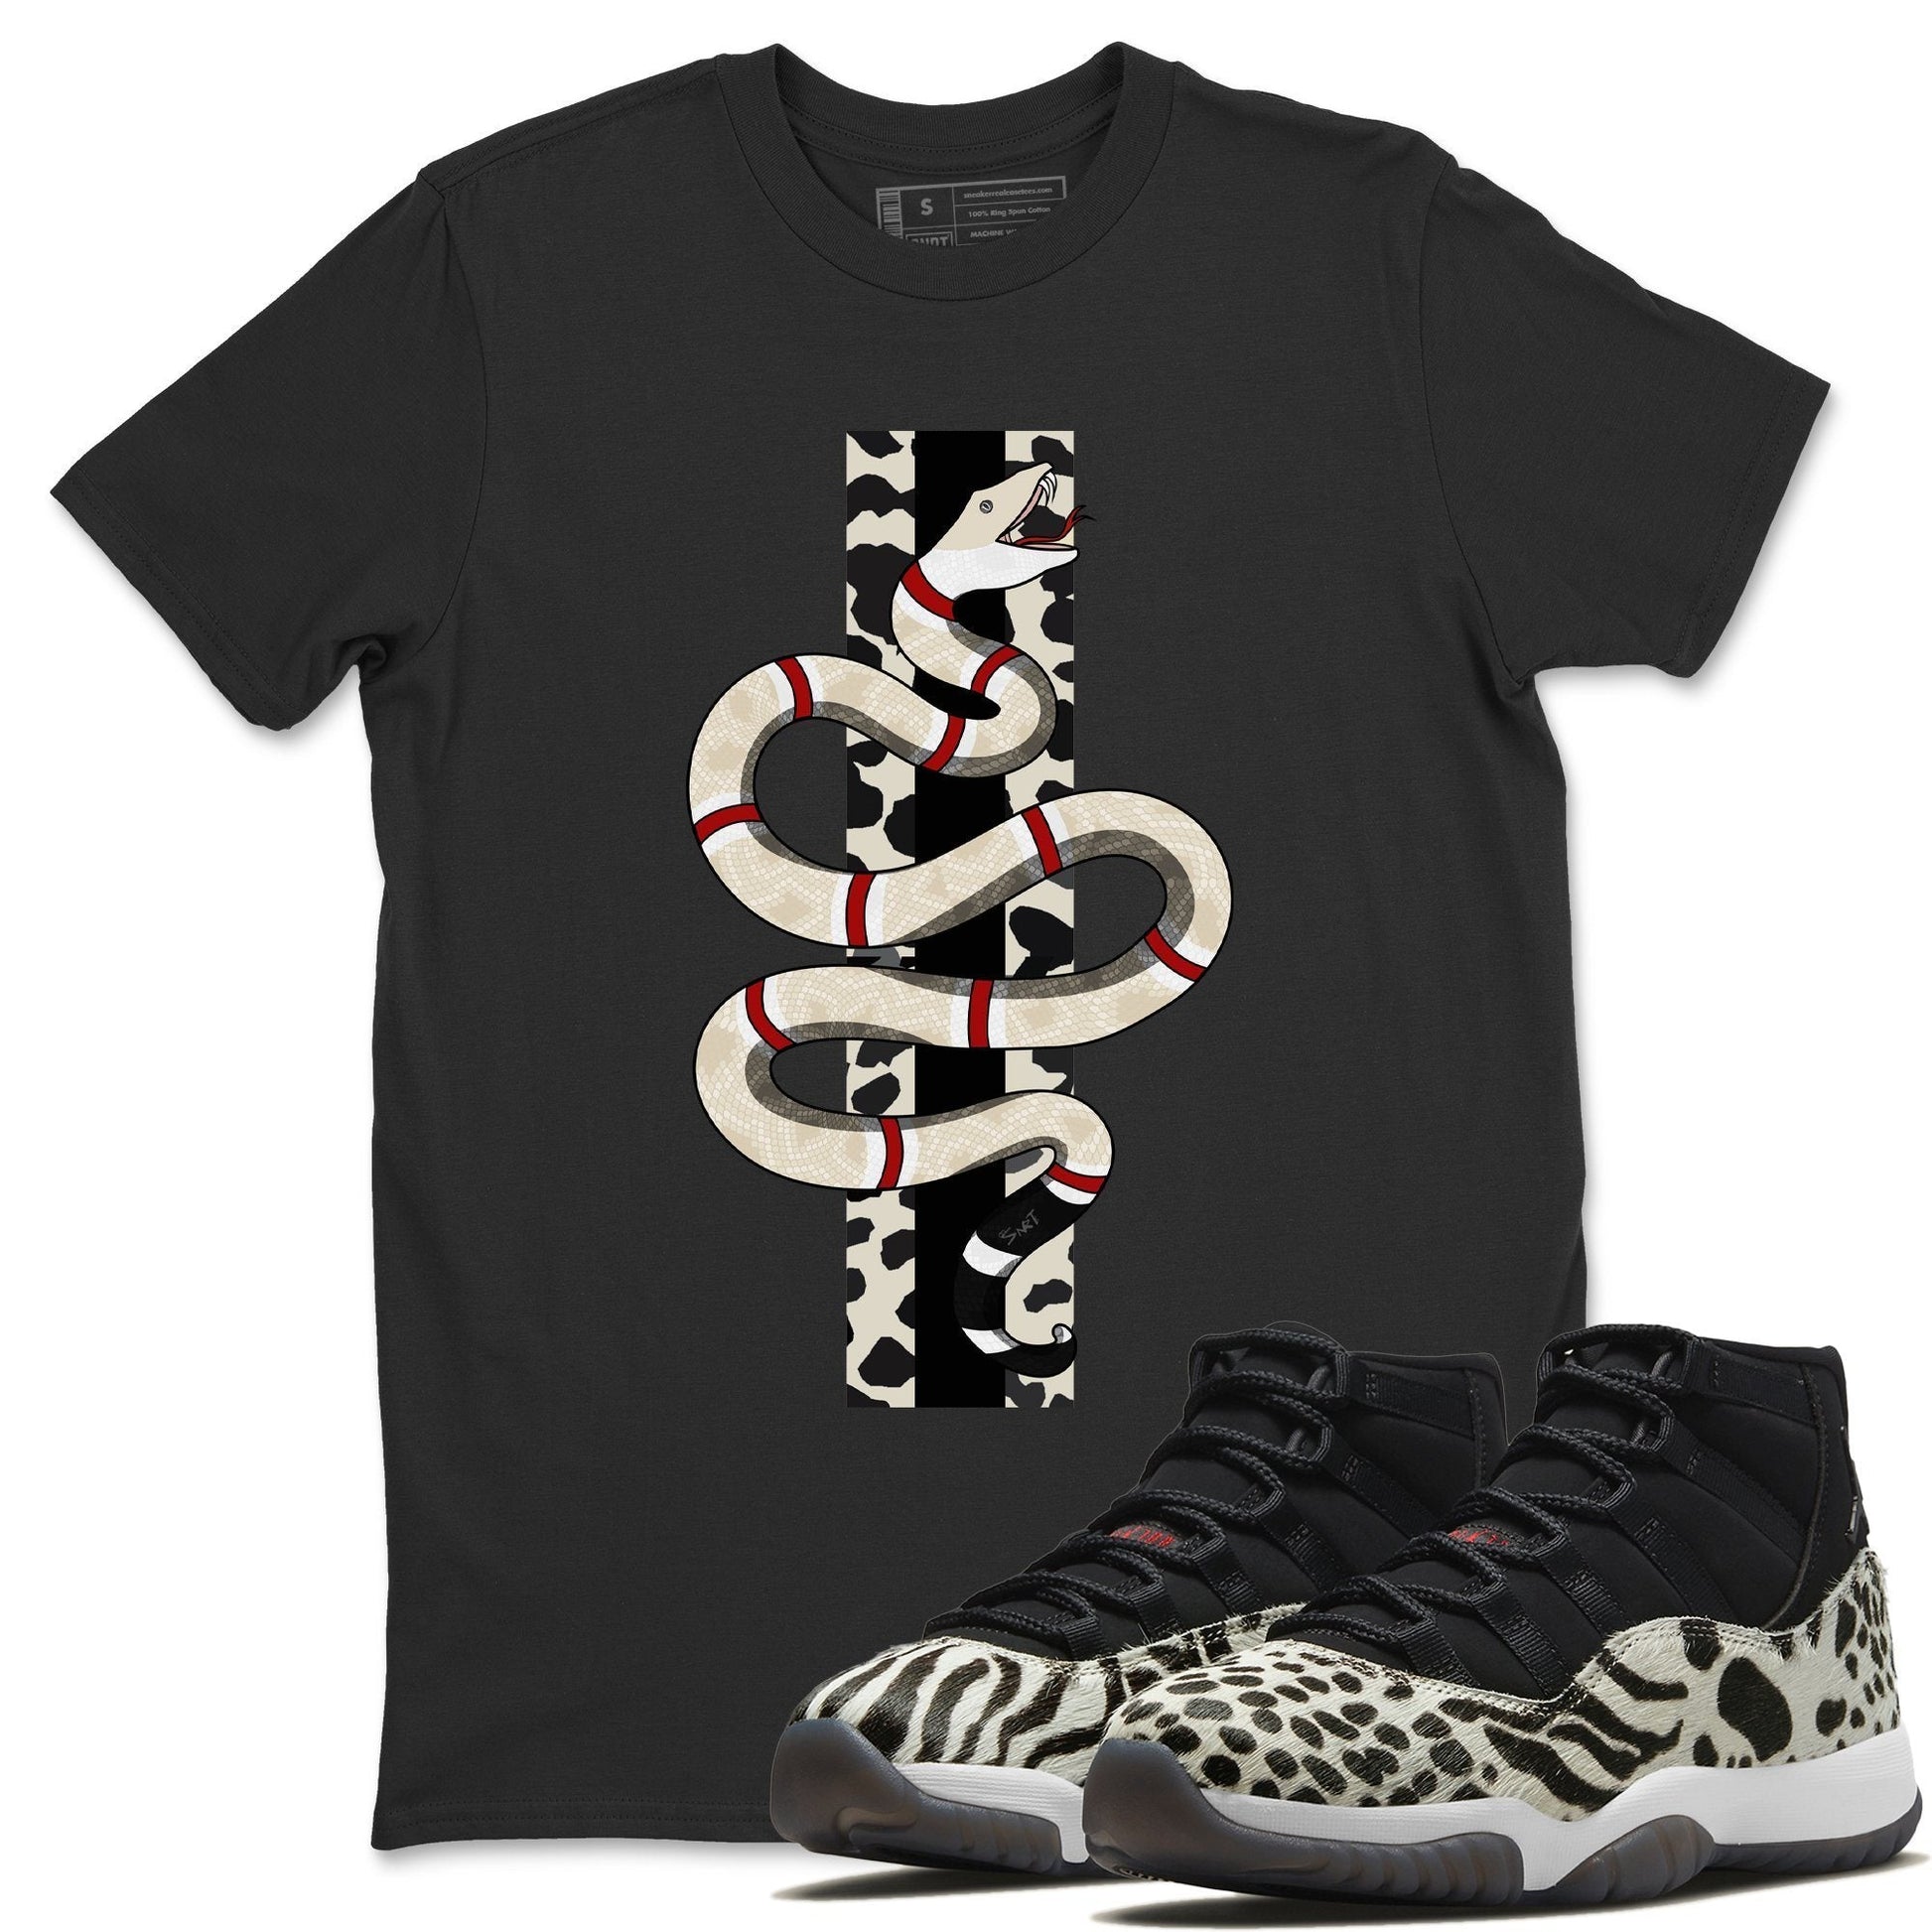 Jordan 11 Animal Instinct Sneaker Match Tees Snake Sneaker Tees Jordan 11 Animal Instinct Sneaker Release Tees Unisex Shirts